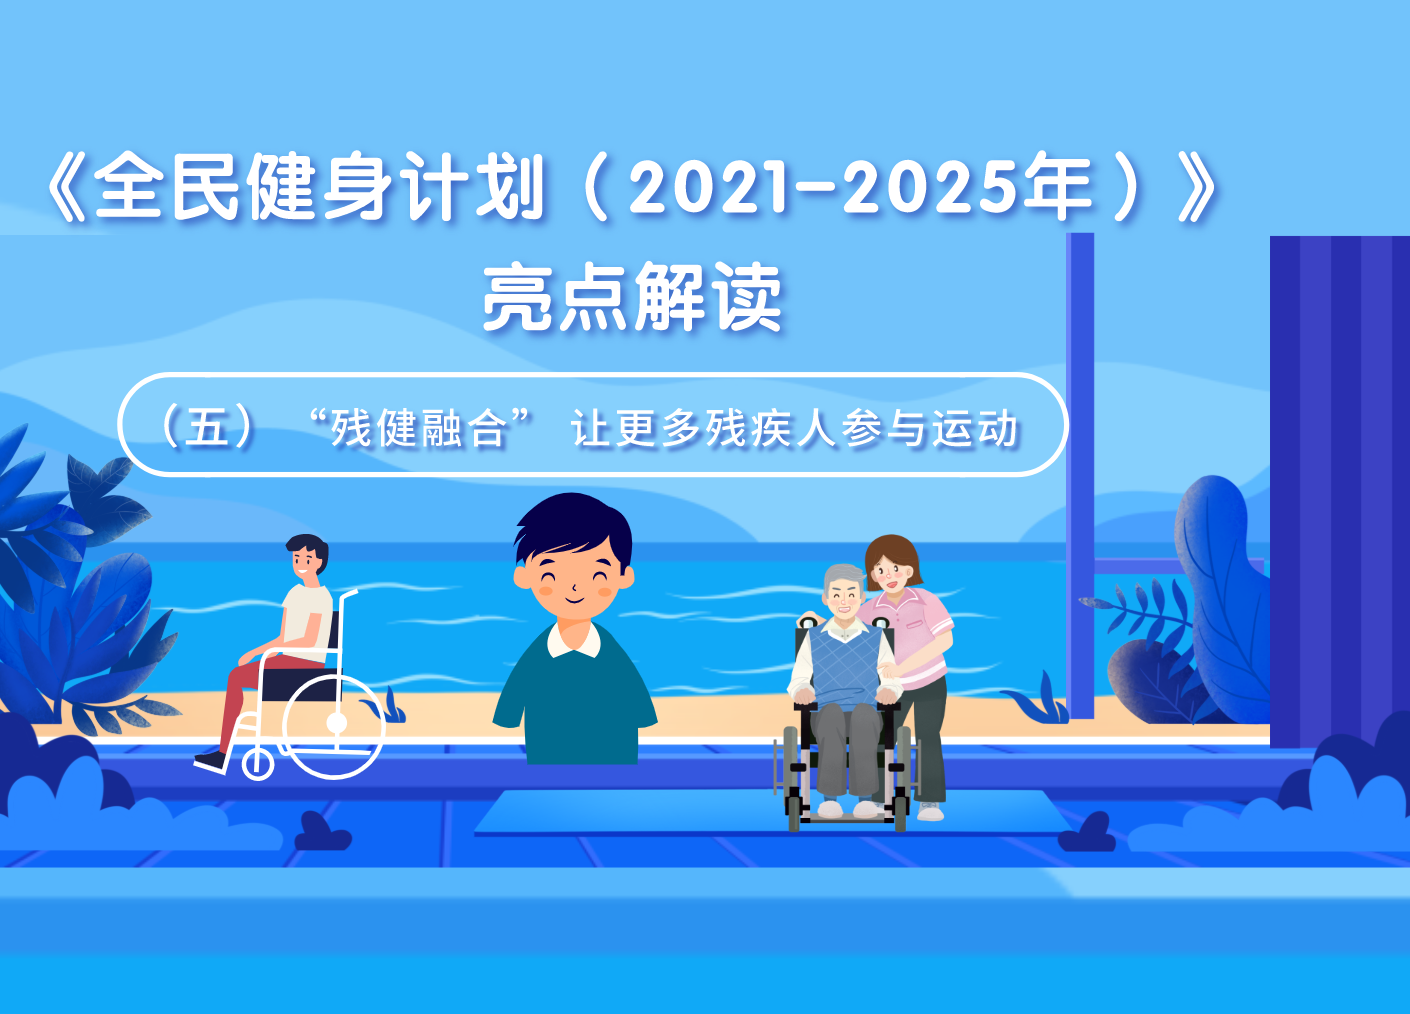 《全民健身计划（2021-2025年）》亮点解读（五）“残健融合” 让更多残疾人参与运动